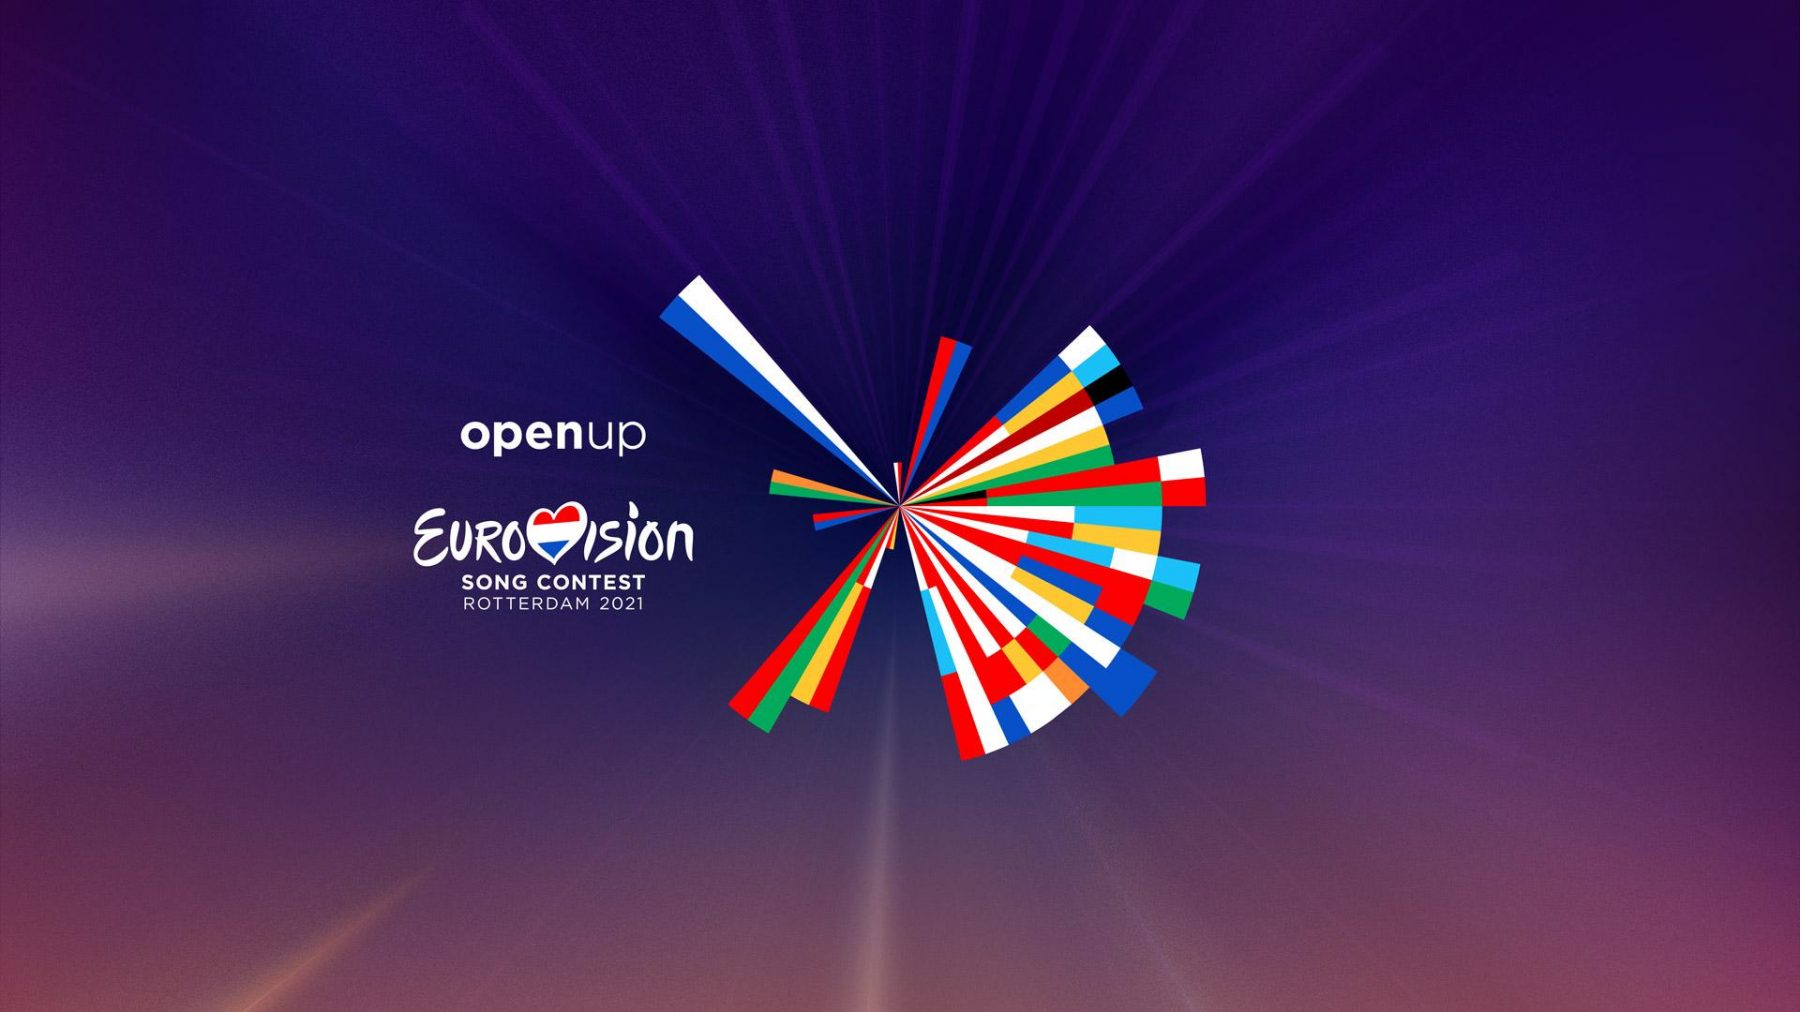 eurovision 2021 logo